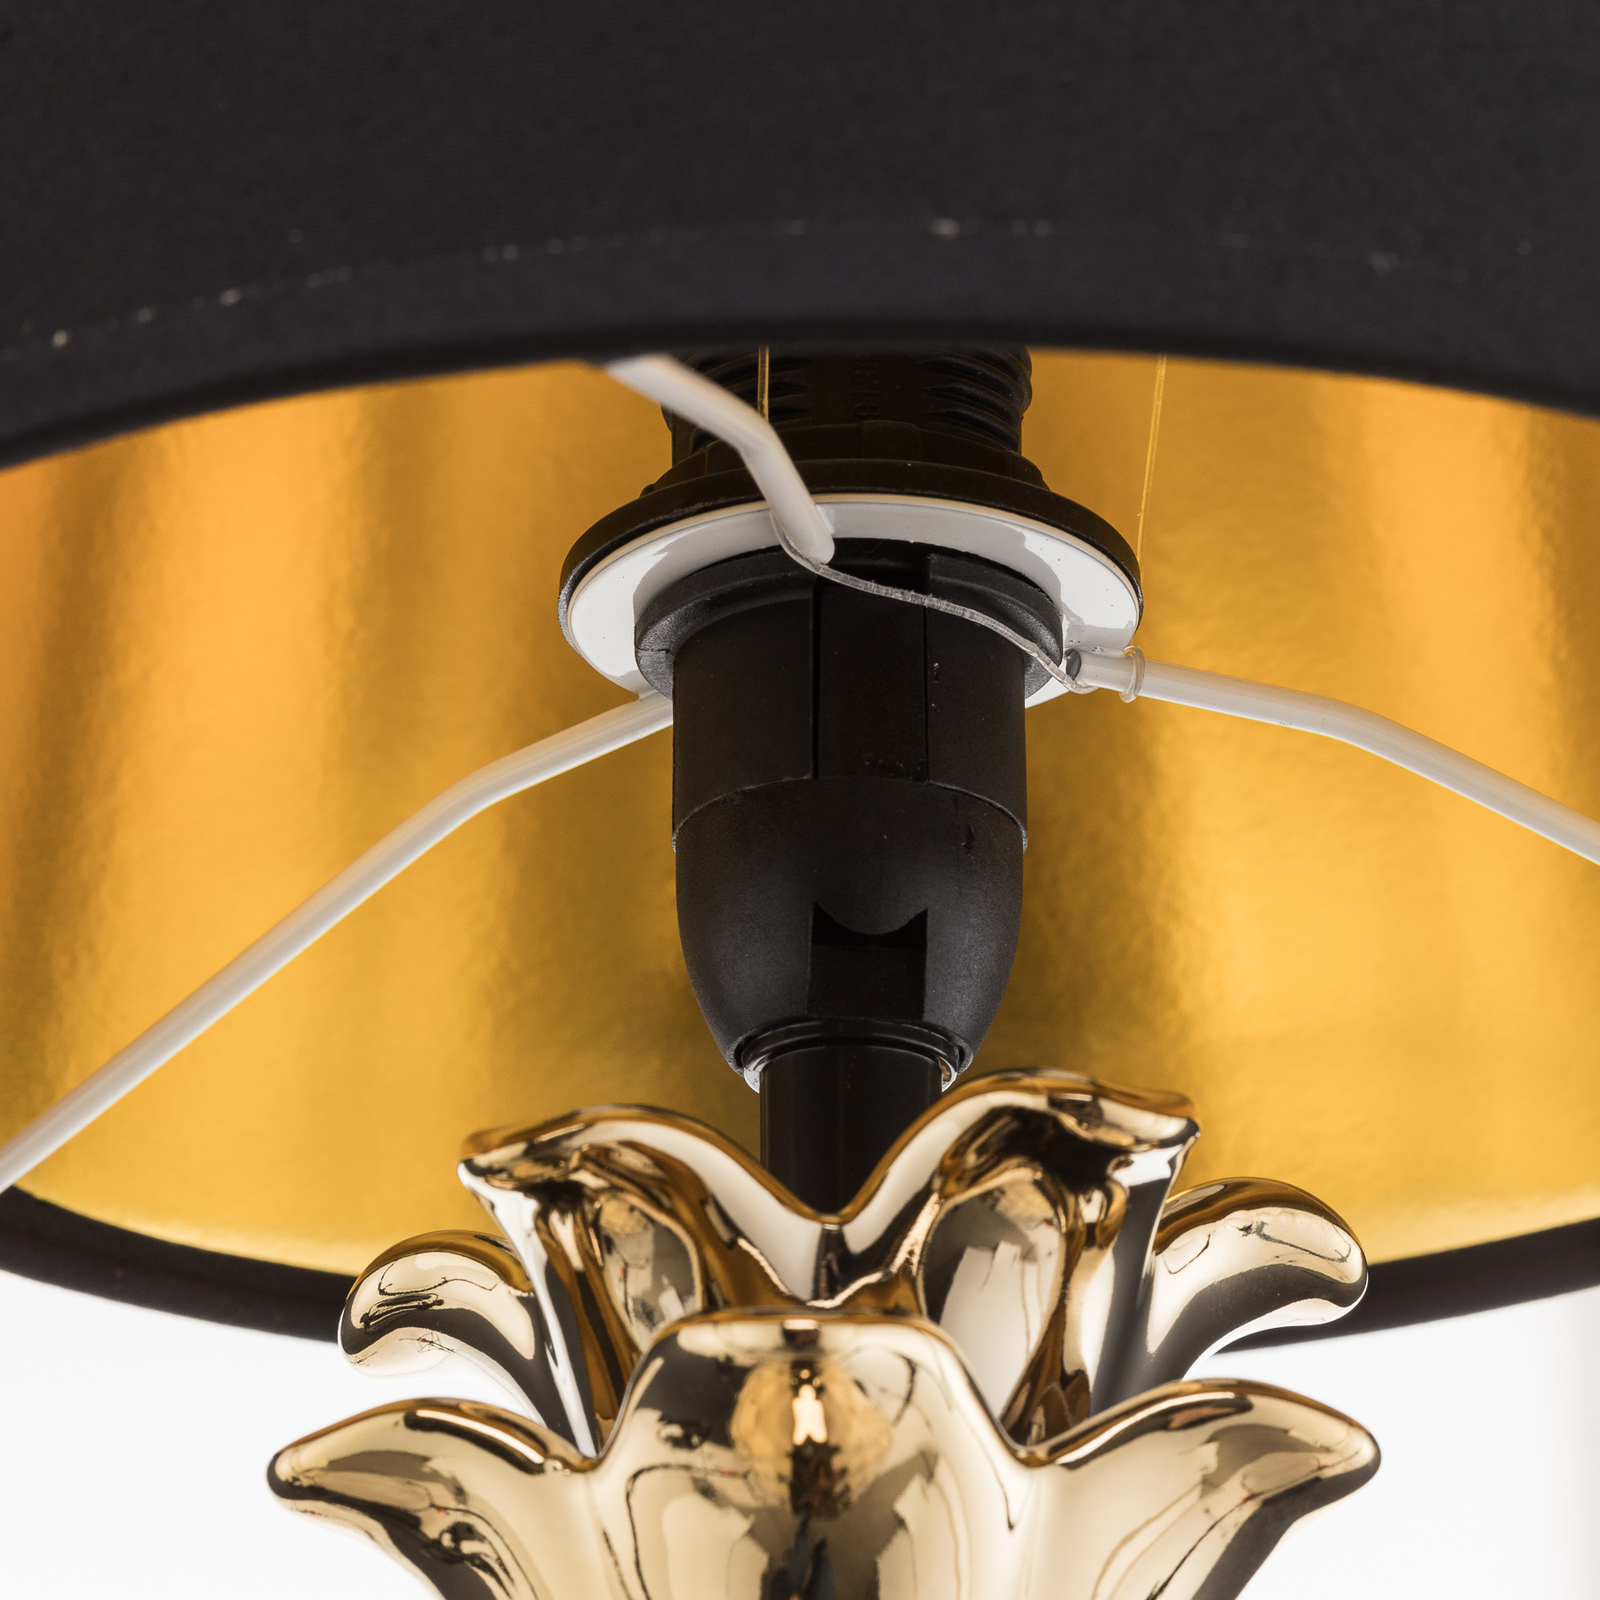 Keramická stolní lampa Pineapple zlatočerná